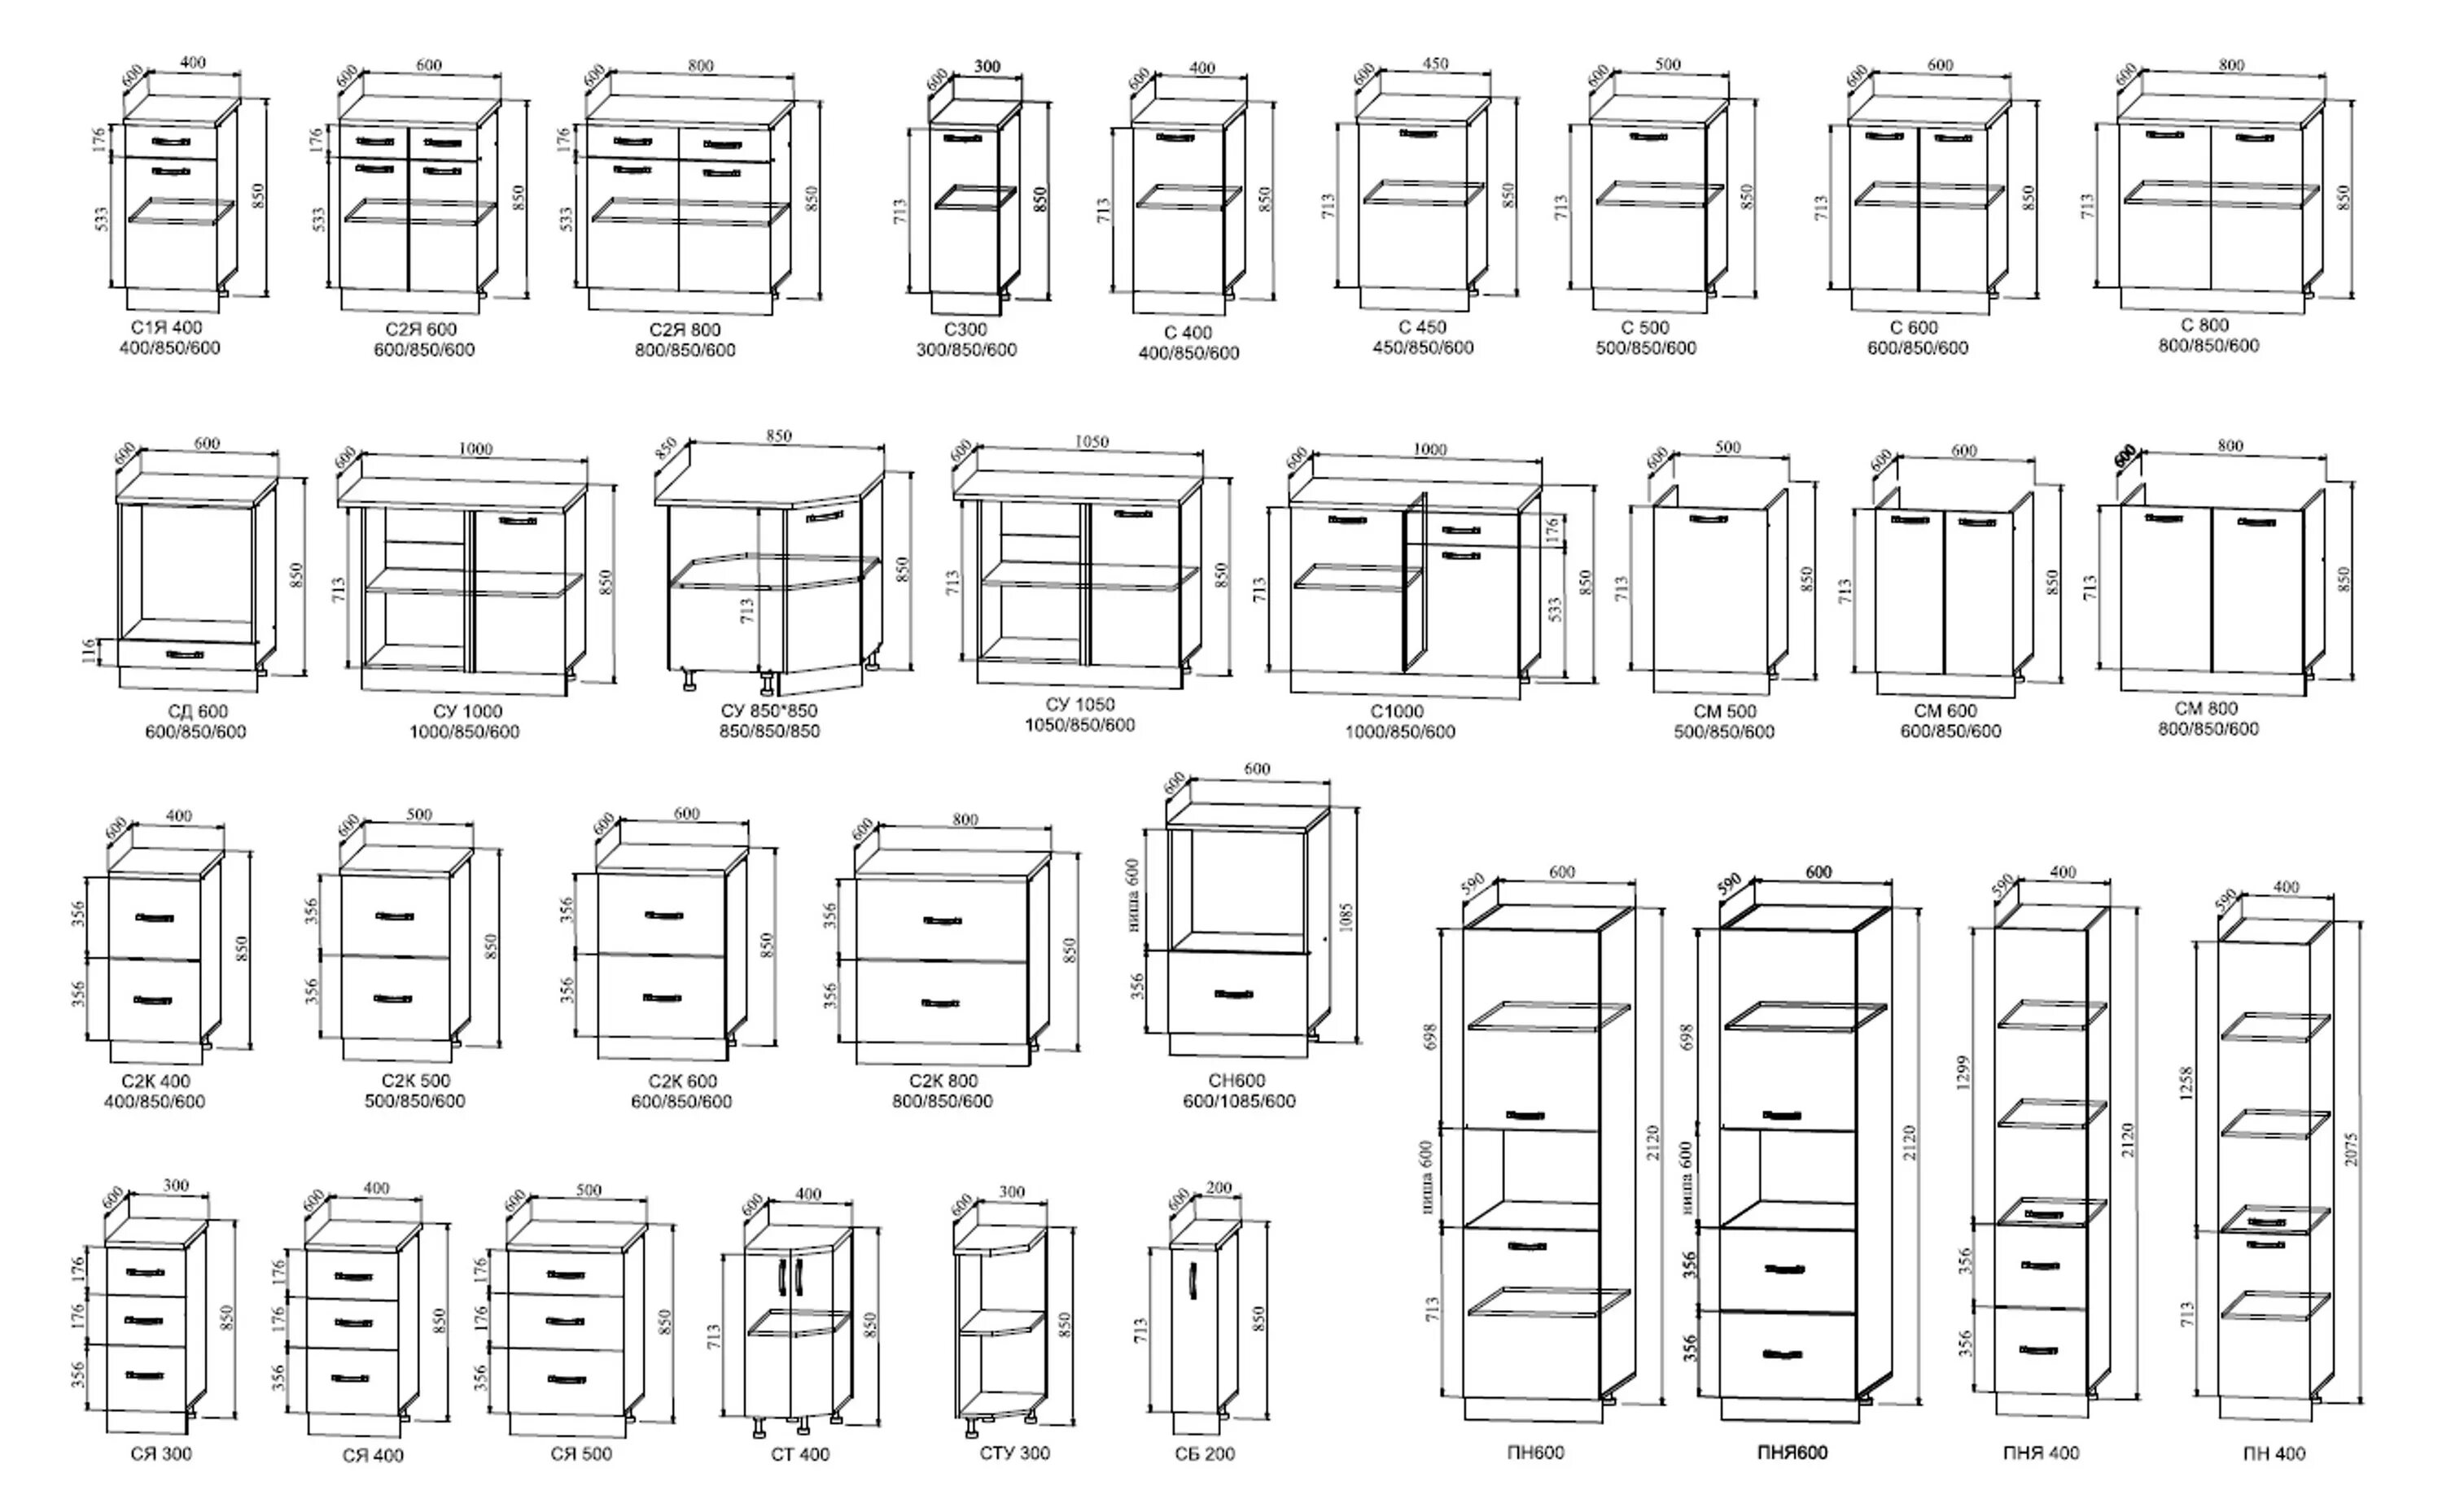 Почему размеры мебели. ДСВ модули кухни. ДСВ-мебель кухни модули. Ширина кухонных шкафов модульной кухни стандарт. Высота модулей кухни ДСВ.